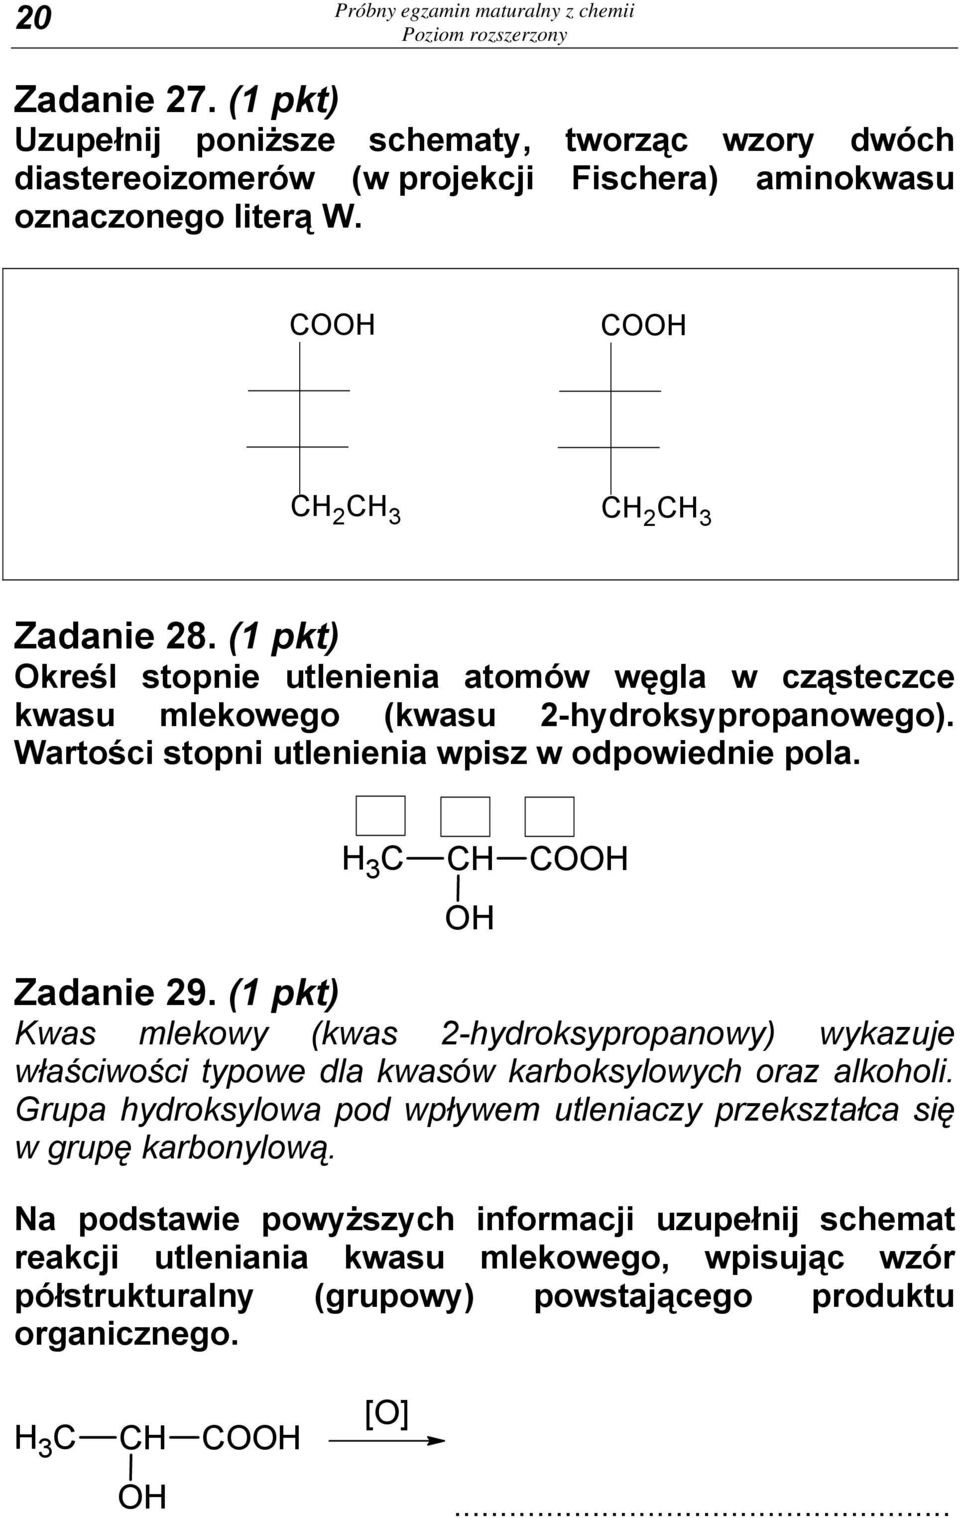 Wartości stopni utlenienia wpisz w odpowiednie pola. H 3 C CH COOH OH Zadanie 29. (1 pkt) Kwas mlekowy (kwas 2-hydroksypropanowy) wykazuje właściwości typowe dla kwasów karboksylowych oraz alkoholi.